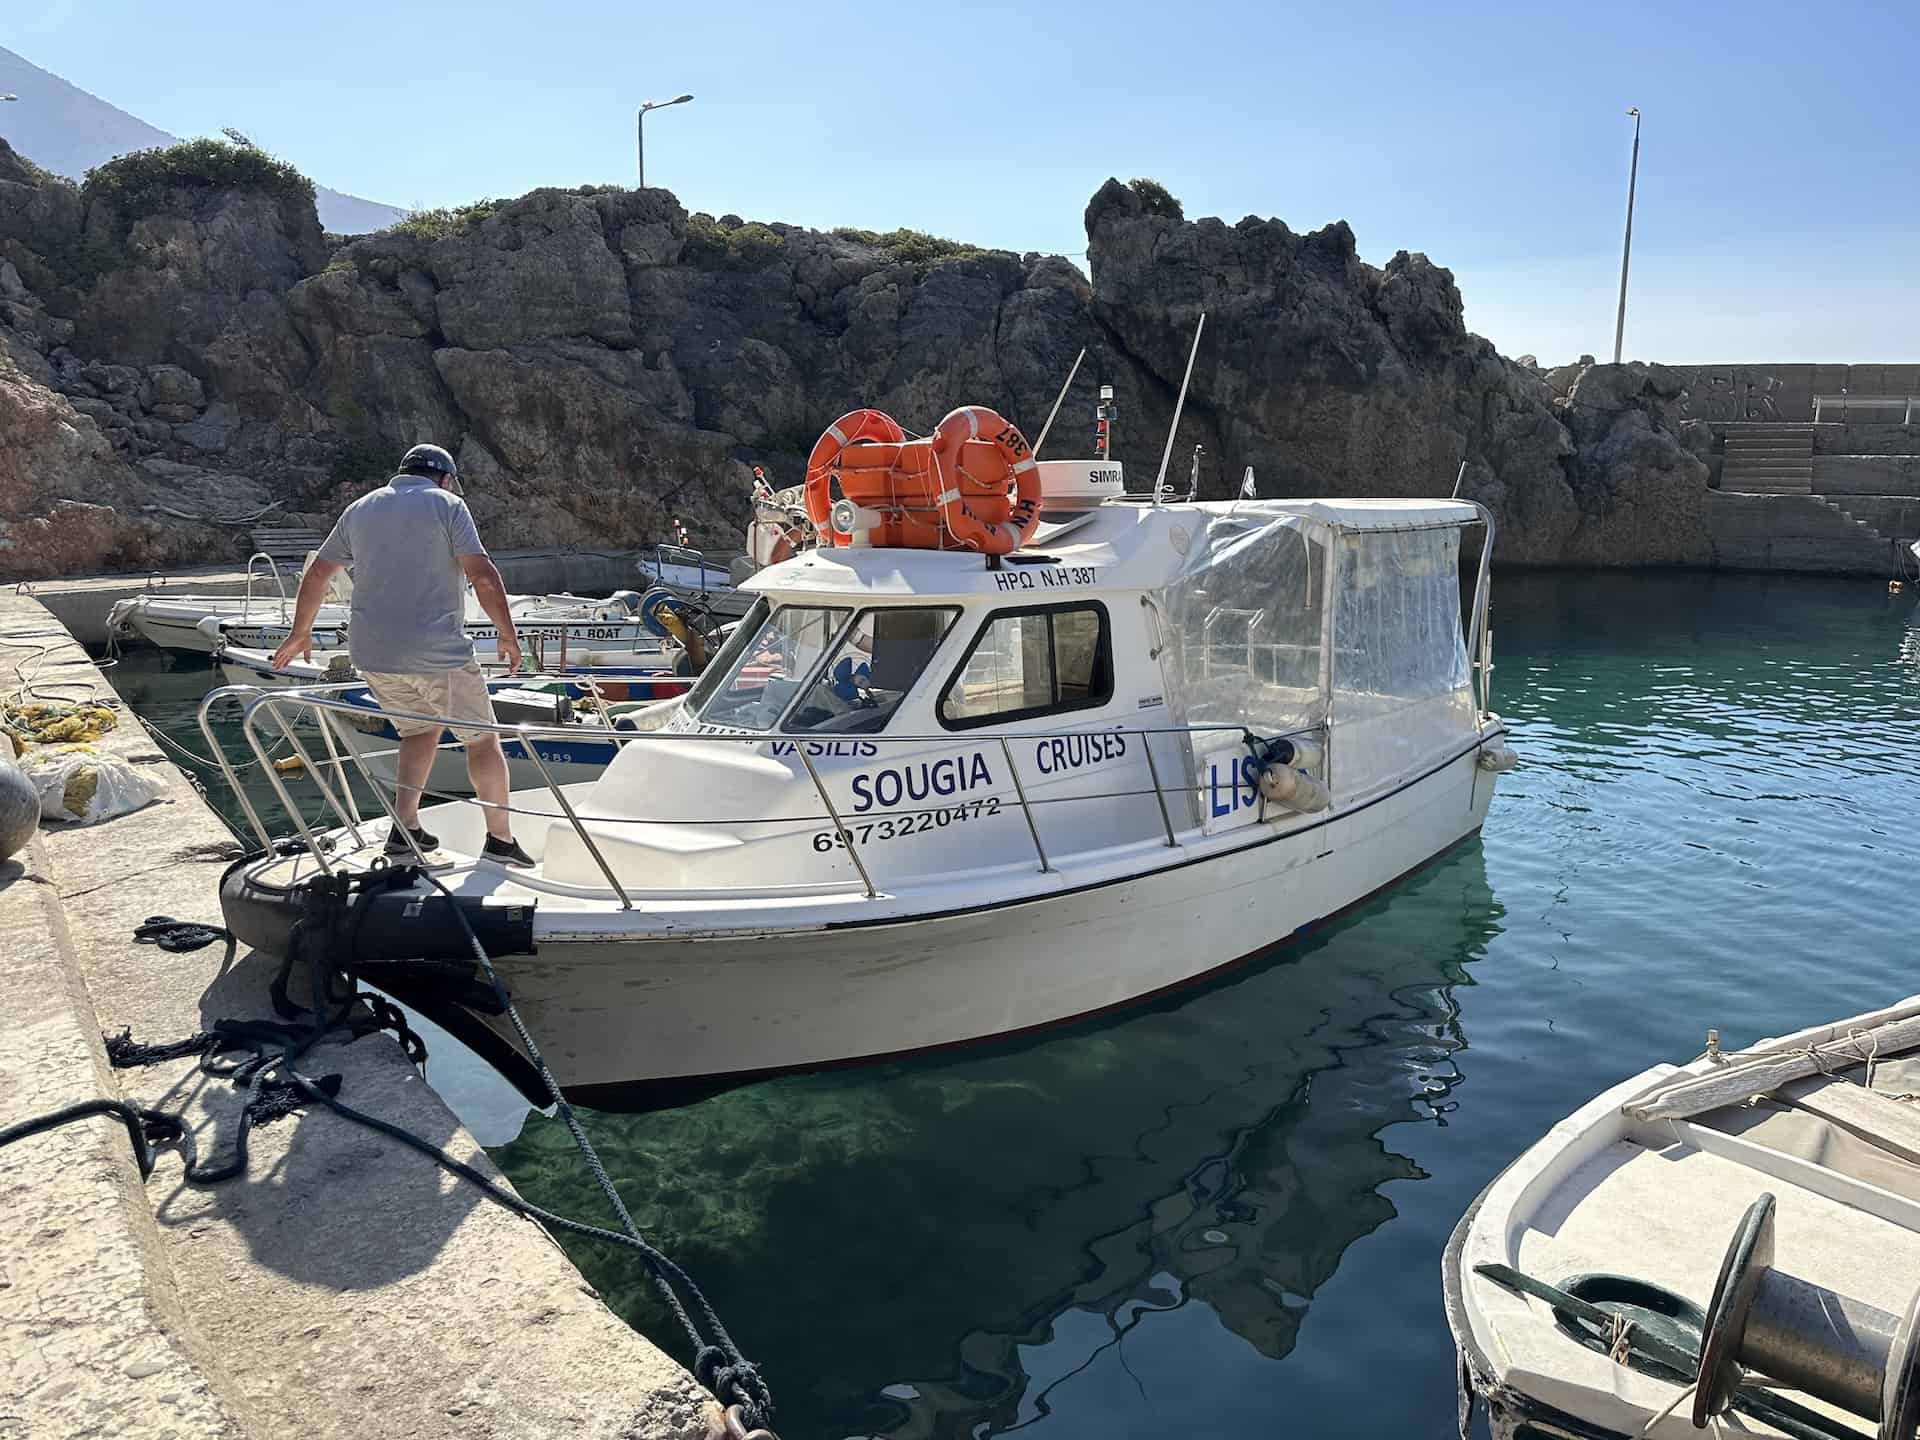 Our boat in Sougia, Crete